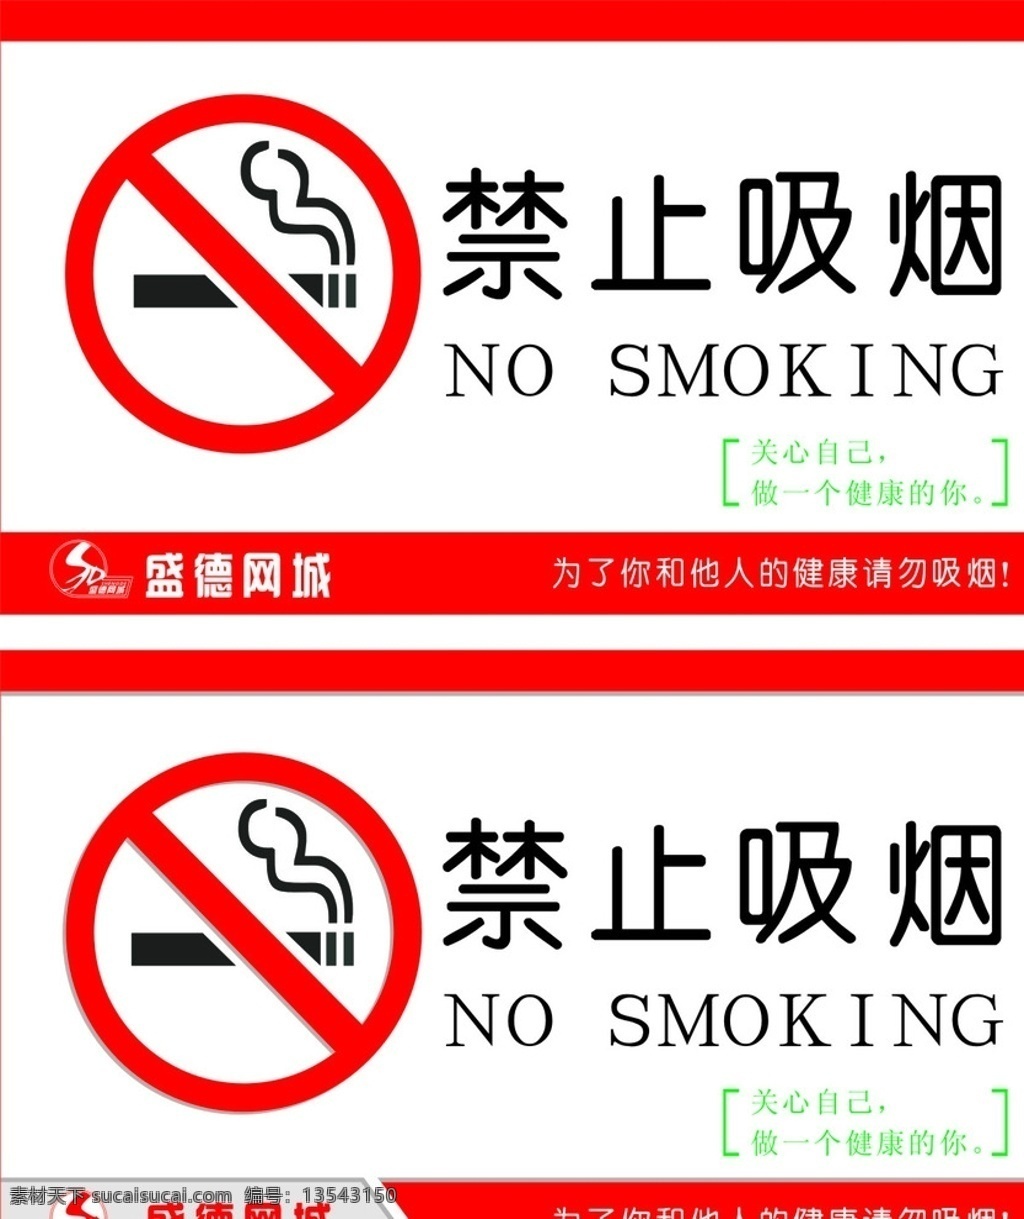 禁止吸烟 请勿吸烟 禁烟标志 吸烟有害 温馨提示 吸烟有害健康 smoking